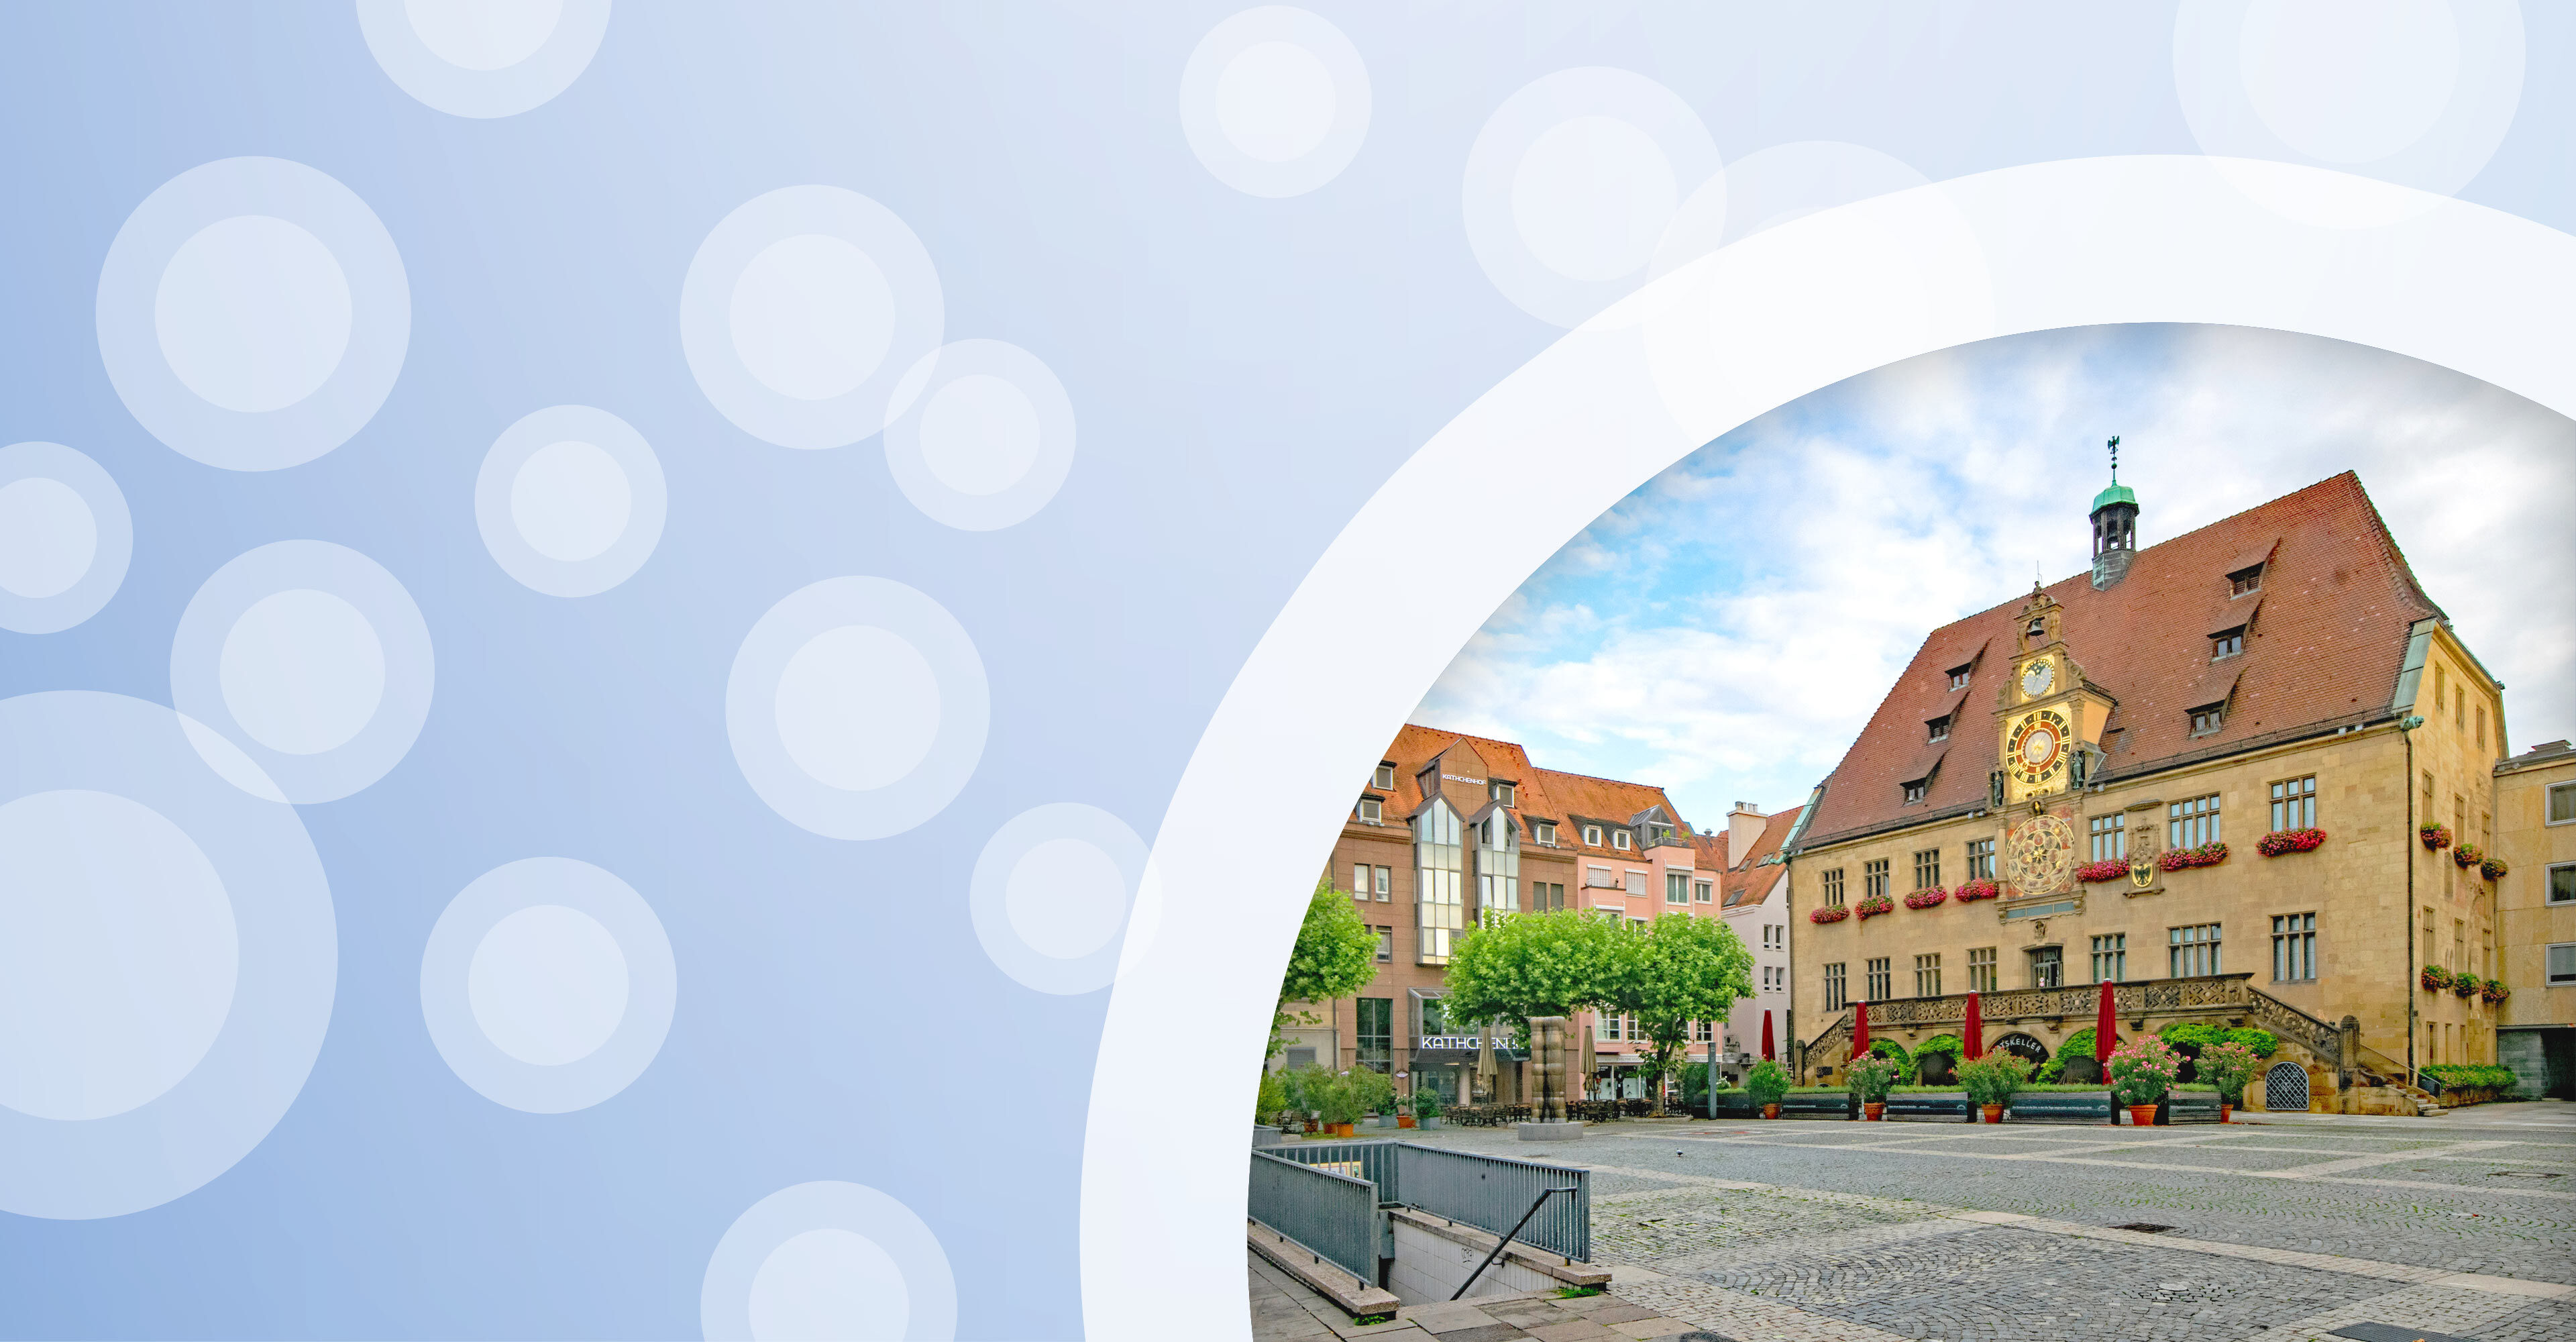 Regionalgrafik in hellblau mit halbtransparenten weißen Kreisen und Foto vom Rathaus in Heilbronn